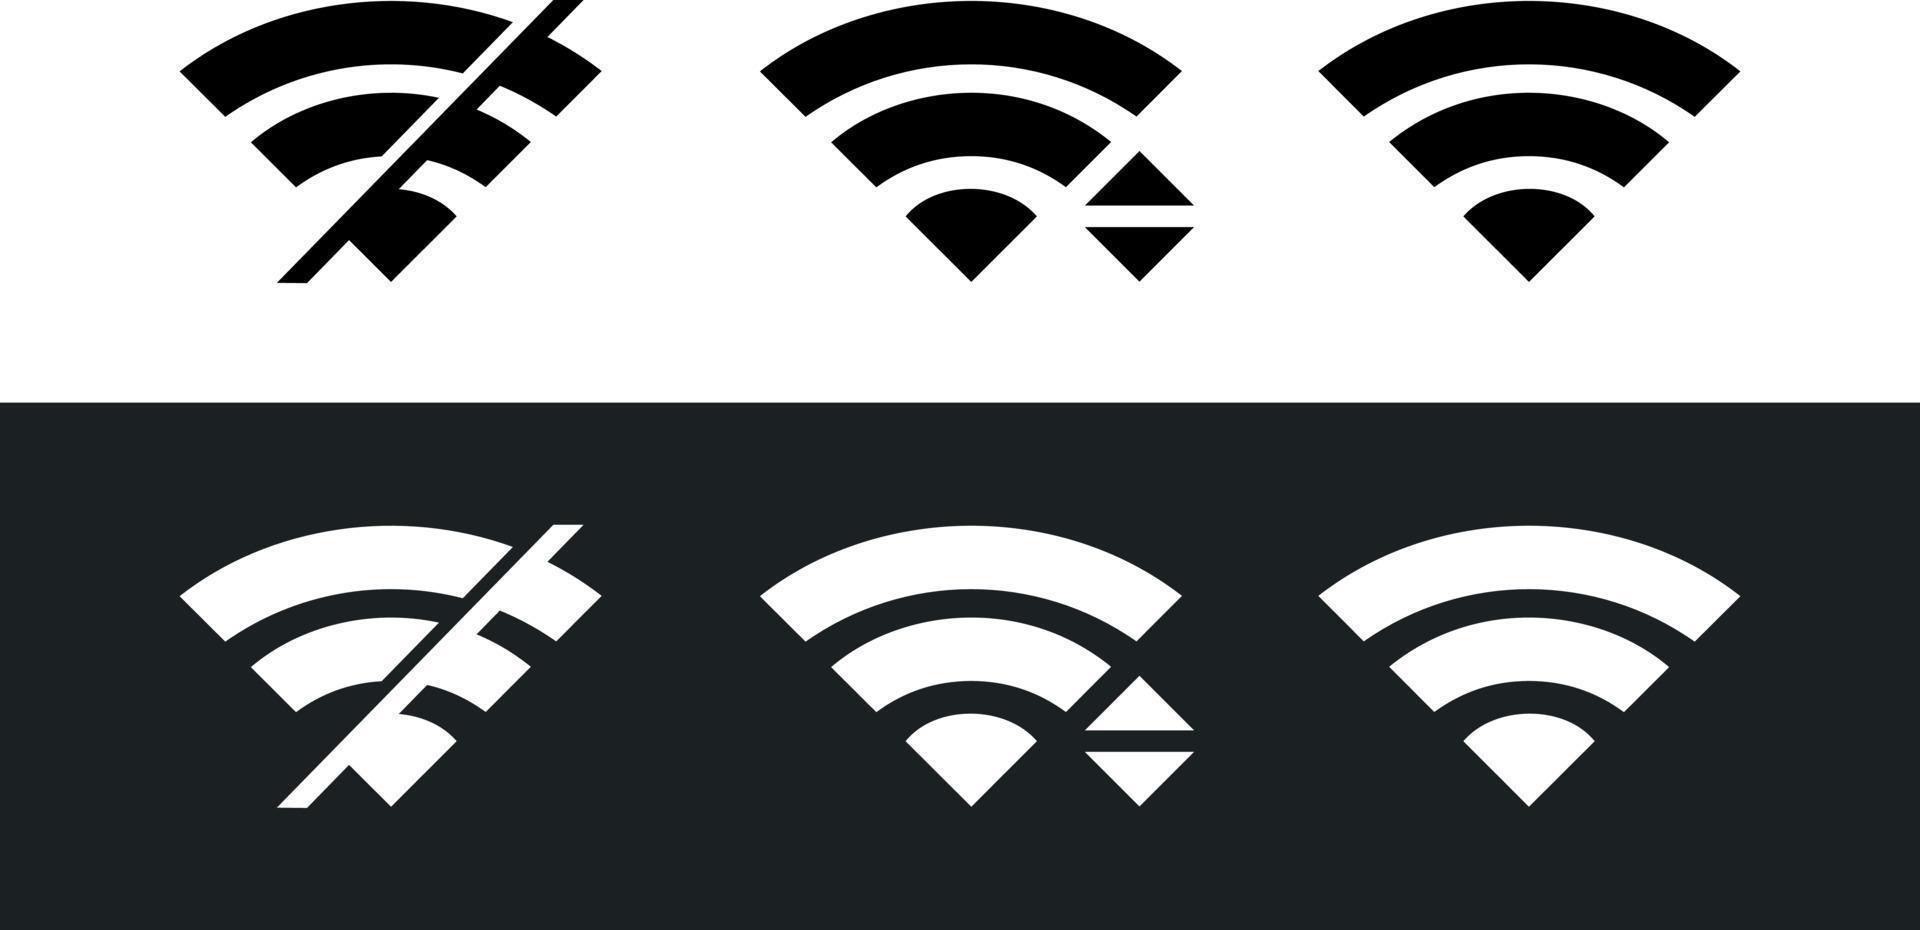 ícone plano de sinal de internet sem fio wi-fi para aplicativos. símbolo de internet sem fio. vetor